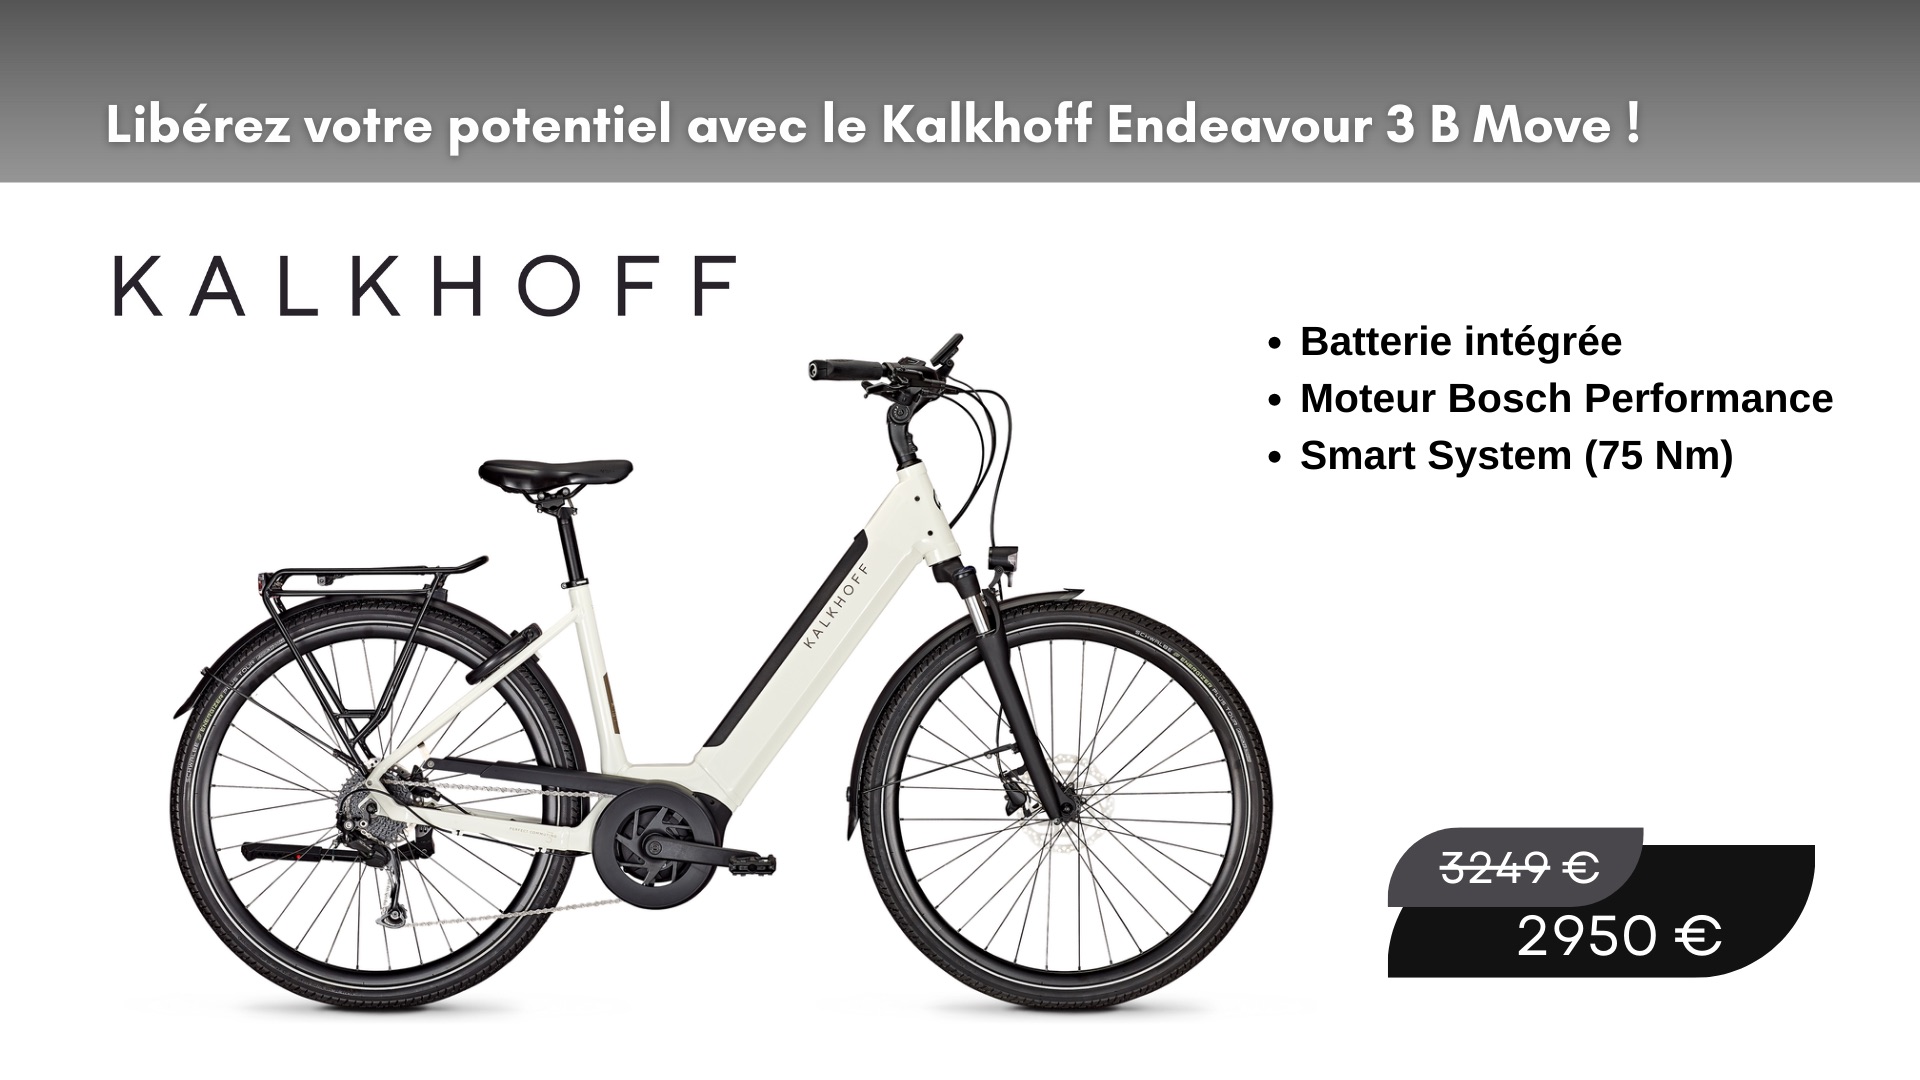 Kalkhoff  Endeavour 3 B Move - Kalkhoff soldé - A petit prix Velozen